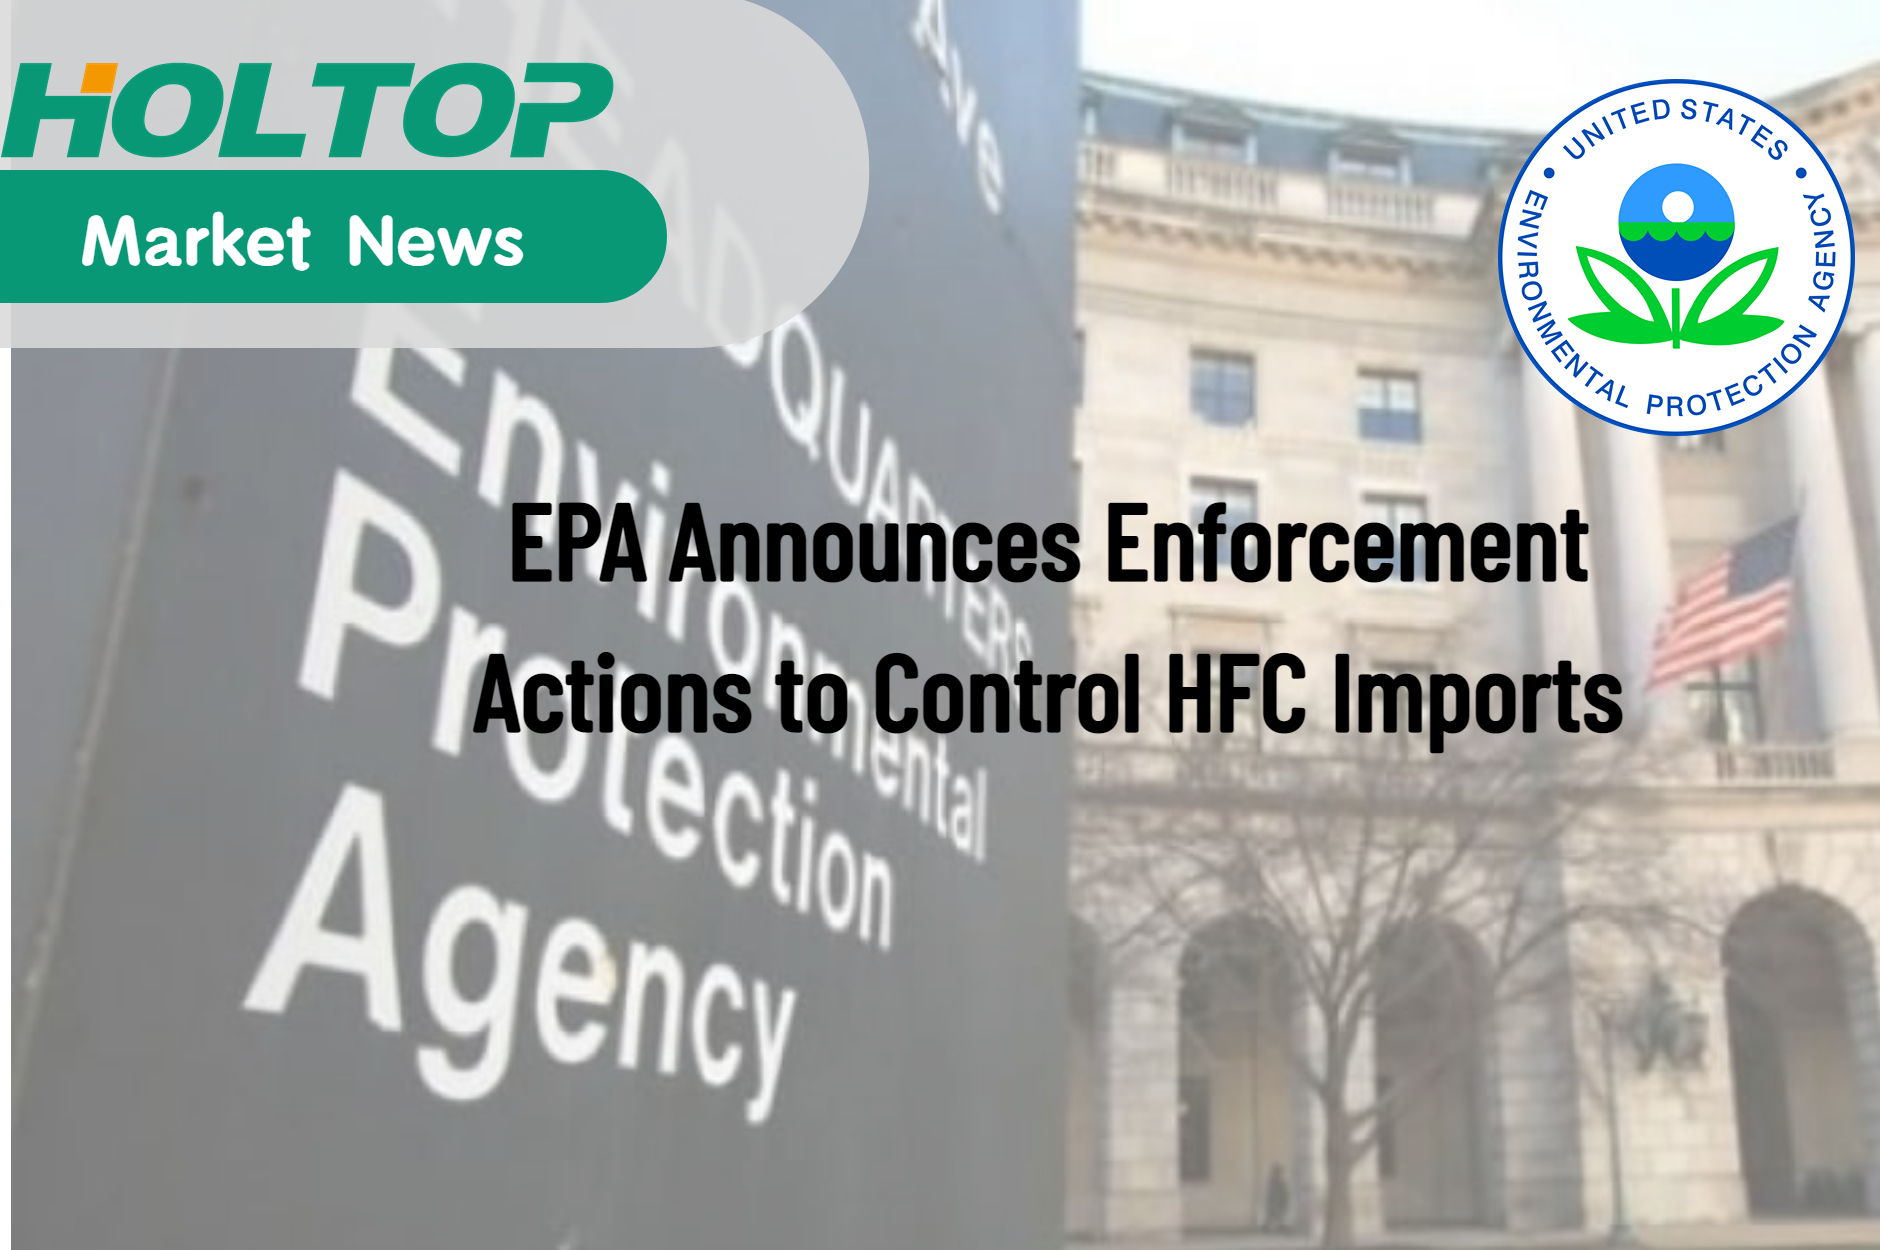 EPA ogłasza działania egzekucyjne w celu kontroli importu HFC